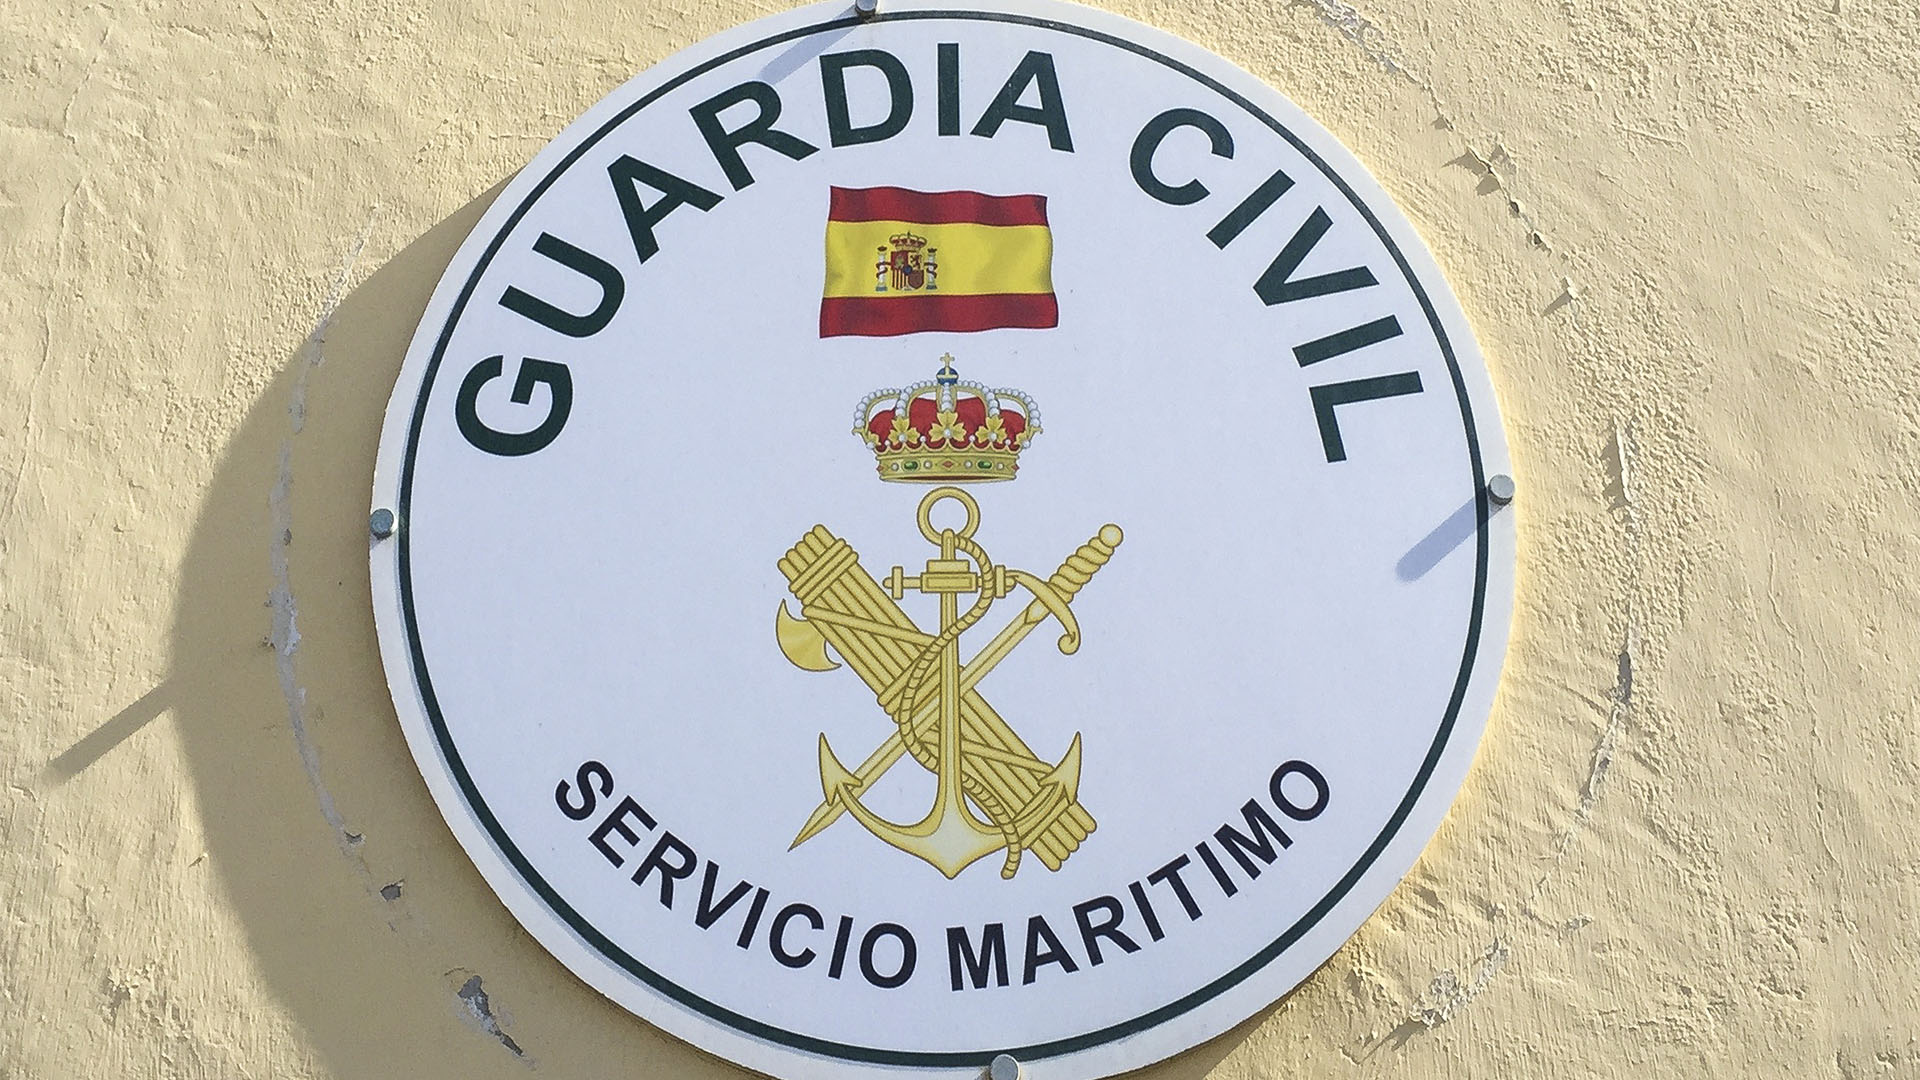 Sicherheit Fuerteventura – Kriminalität, Sicherheit, Polizei, Guardia Civil und andere Institutionen.